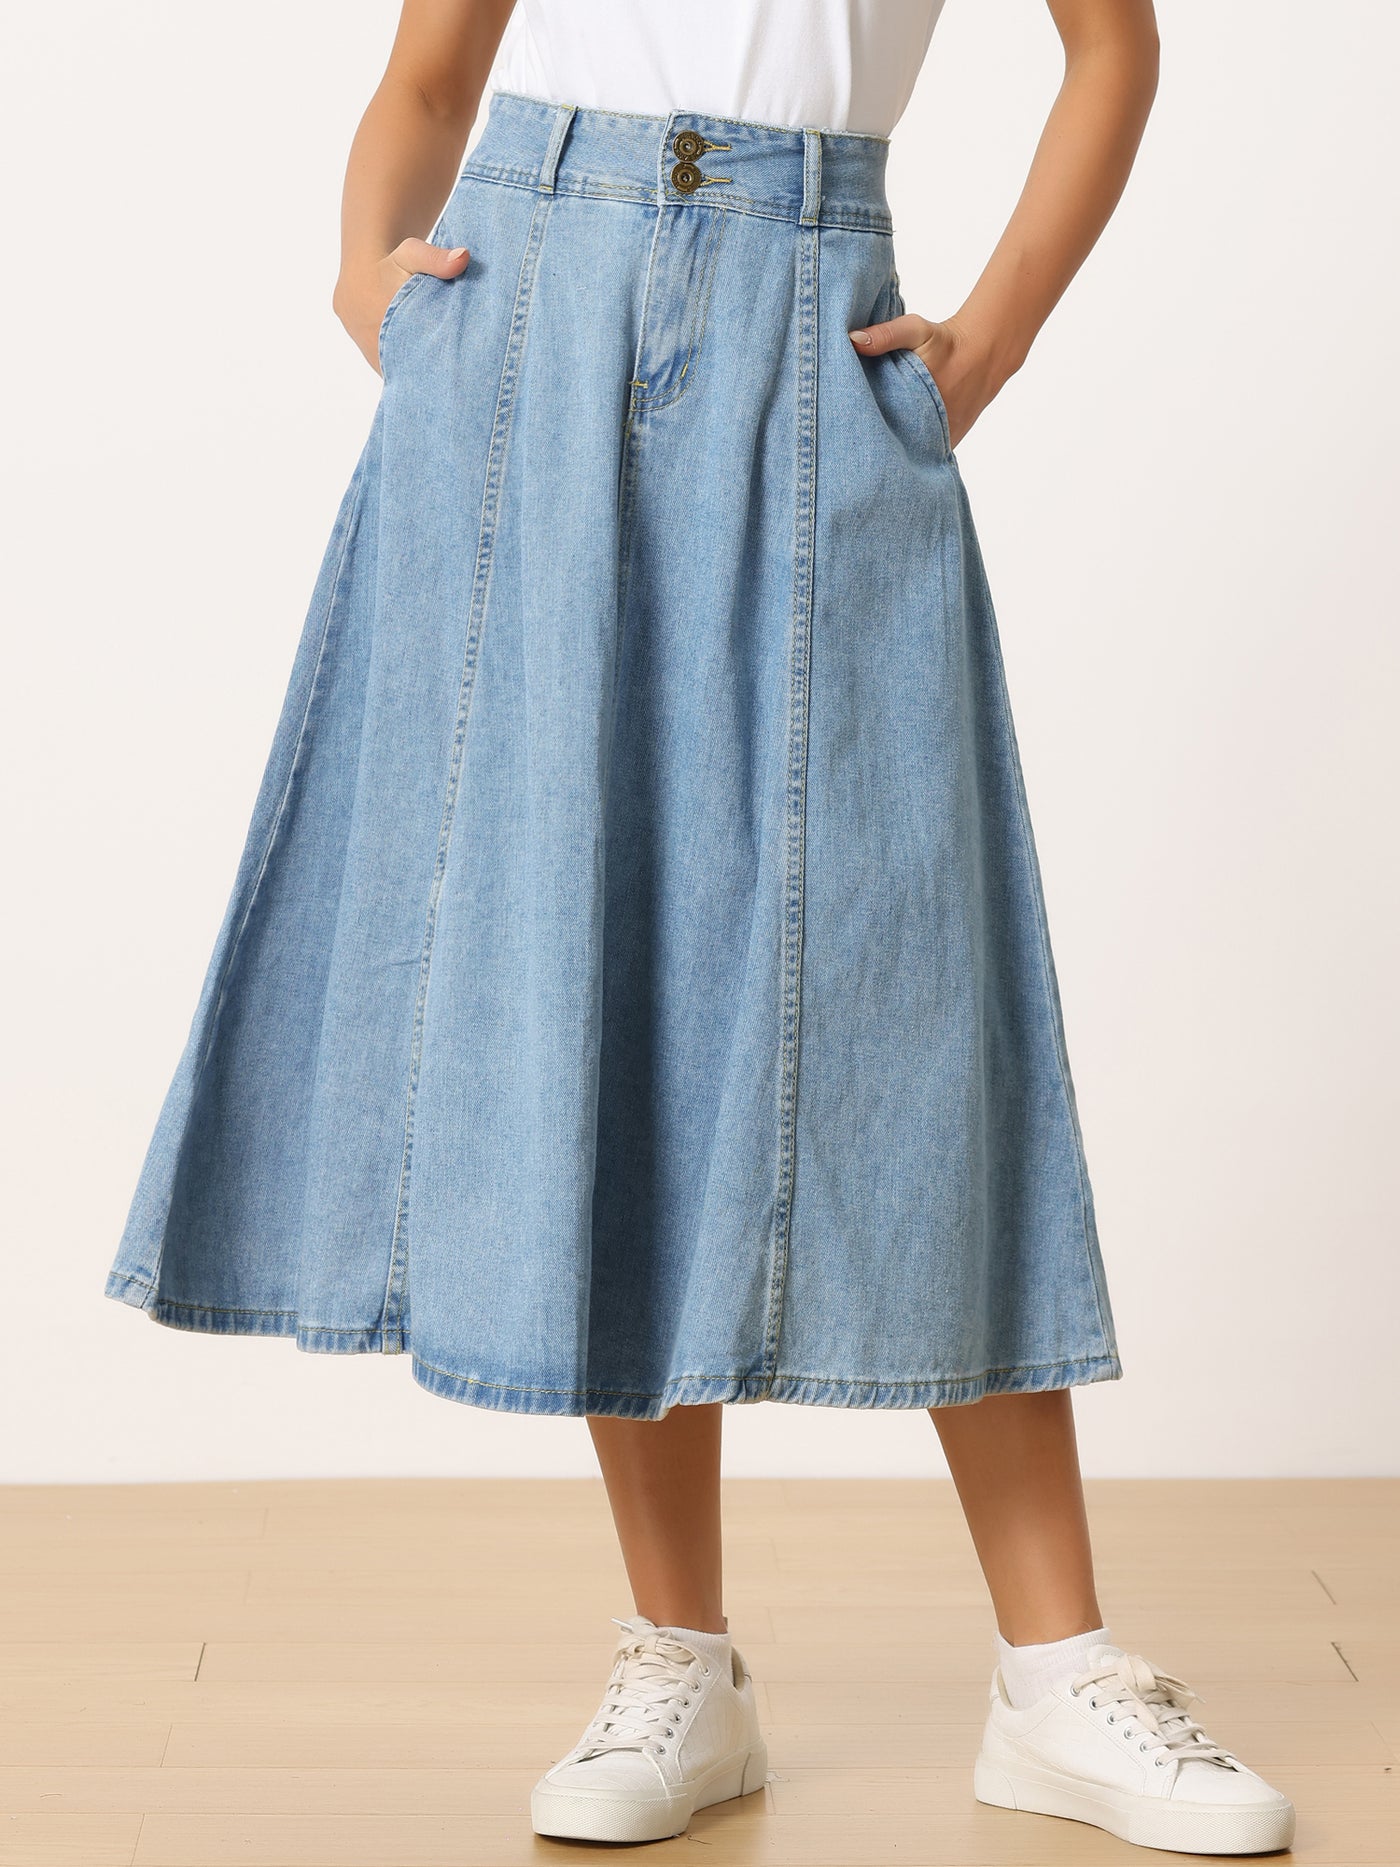 Allegra K Casual Denim High Waist A-Line Classic Long Jean Skirts